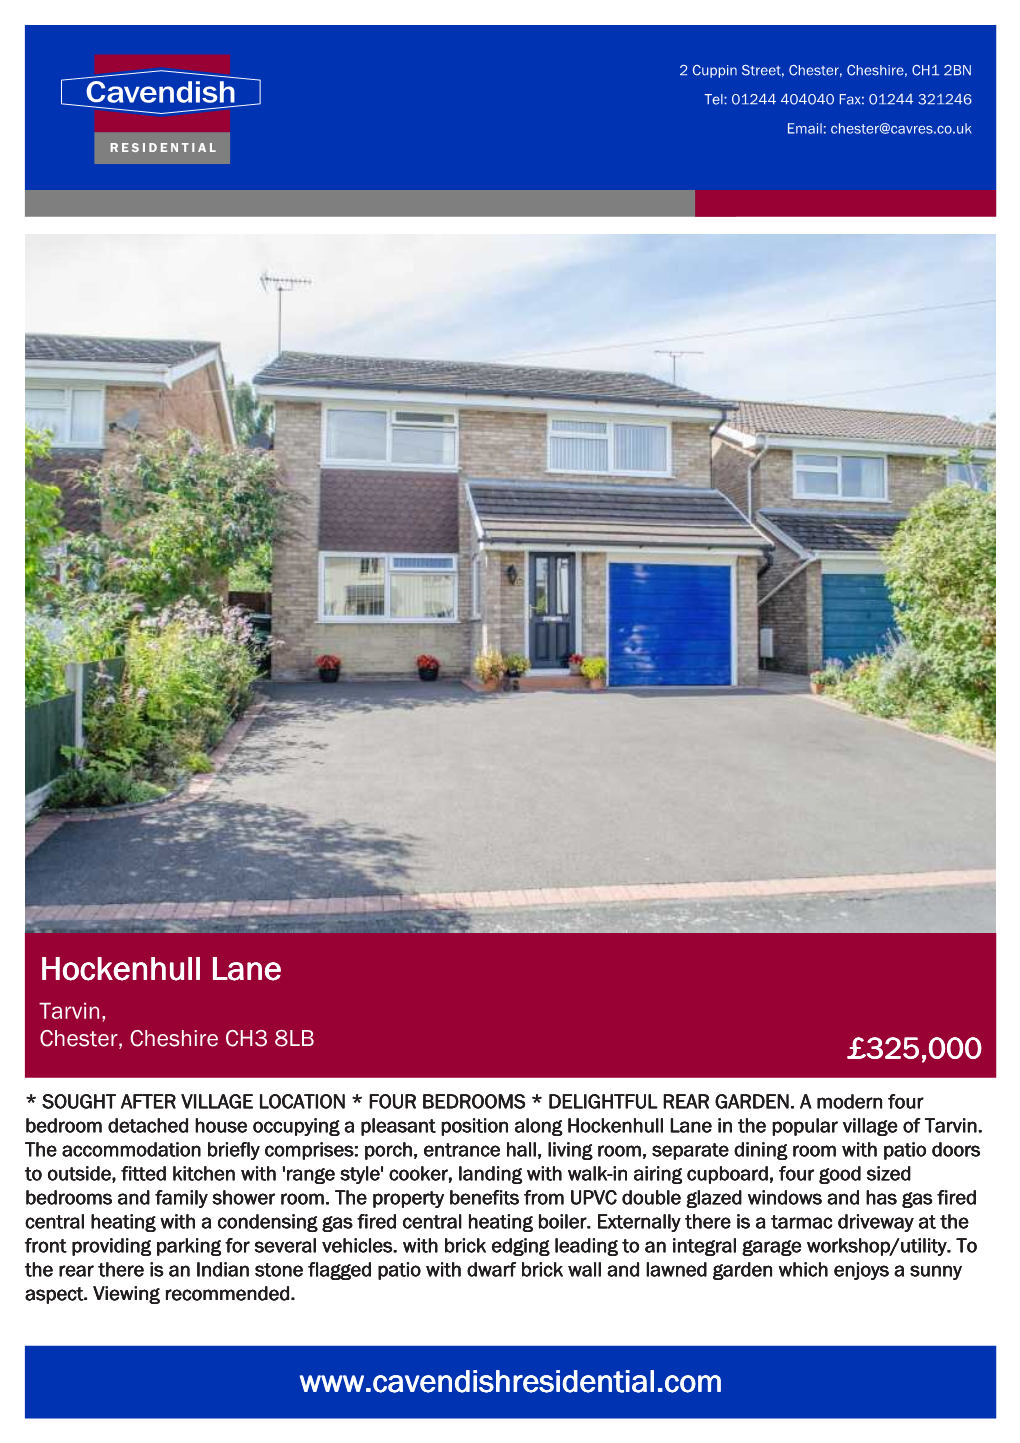 Hockenhull Lane Tarvin, Chester, Cheshire CH3 8LB £325,000